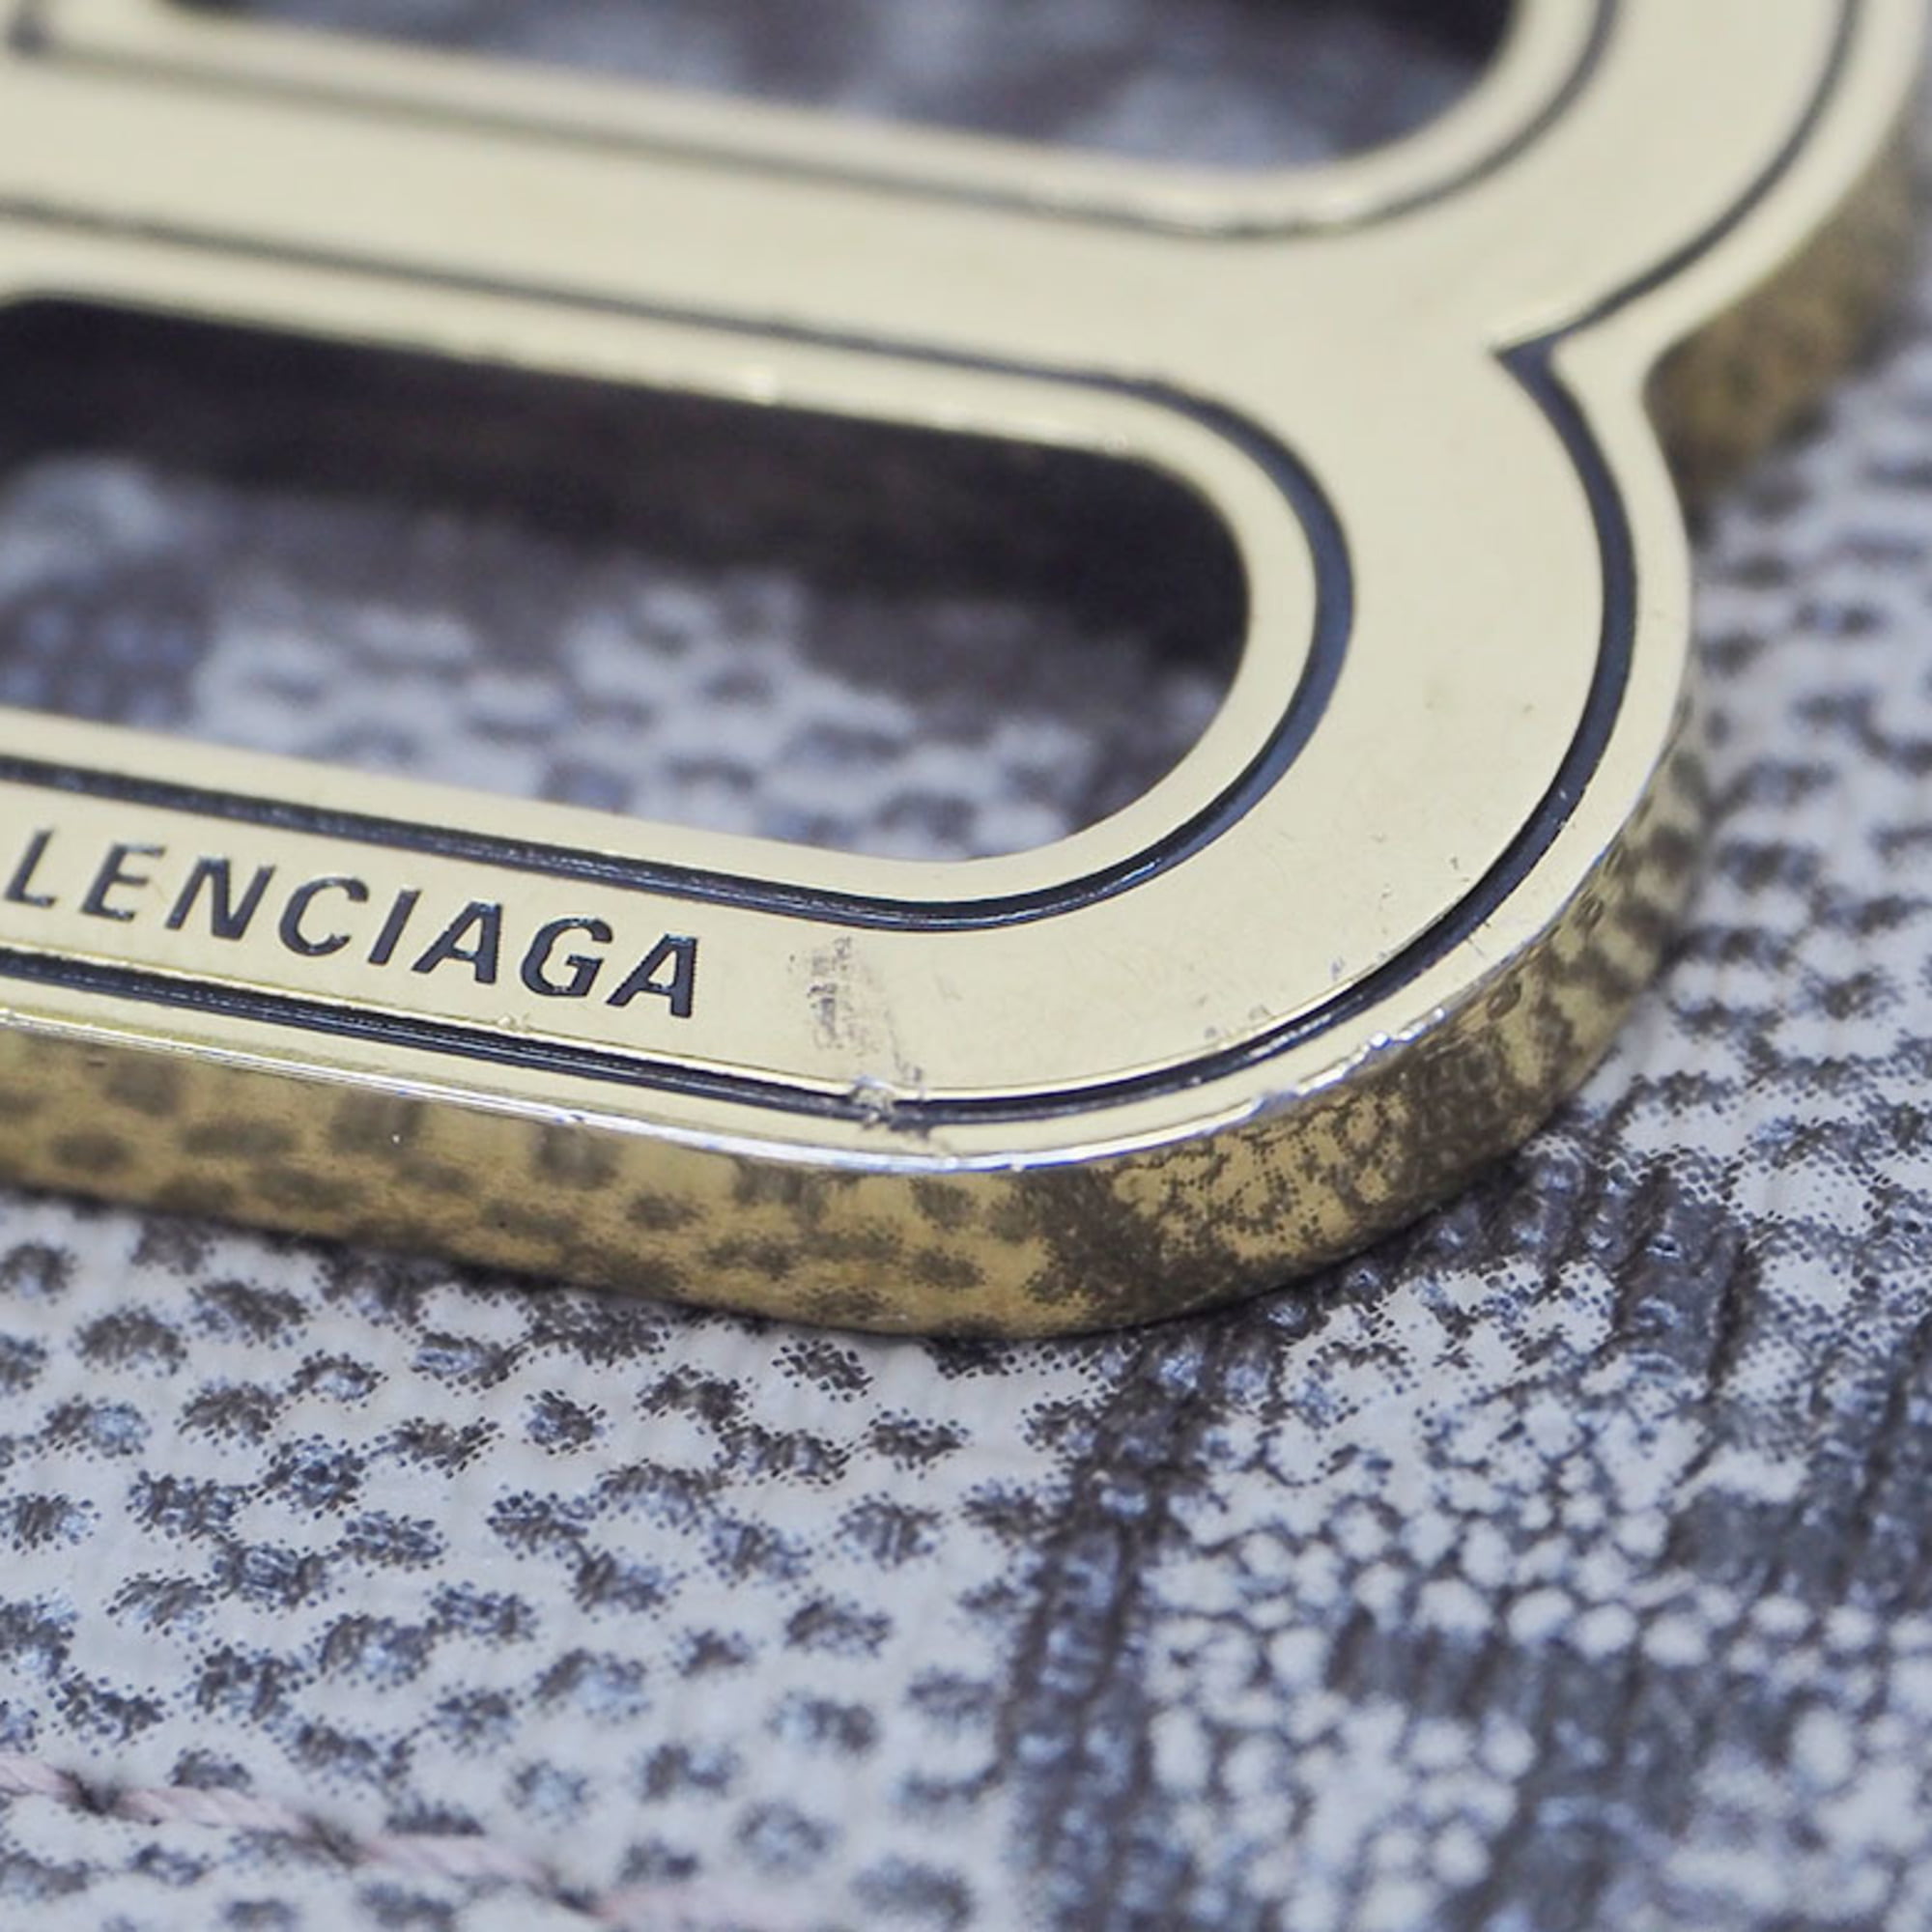 Gucci GUCCI x BALENCIAGA Hacker Project Mini 681700 Trifold Wallet  Collaboration Women's Men's GG Supreme Balenciaga